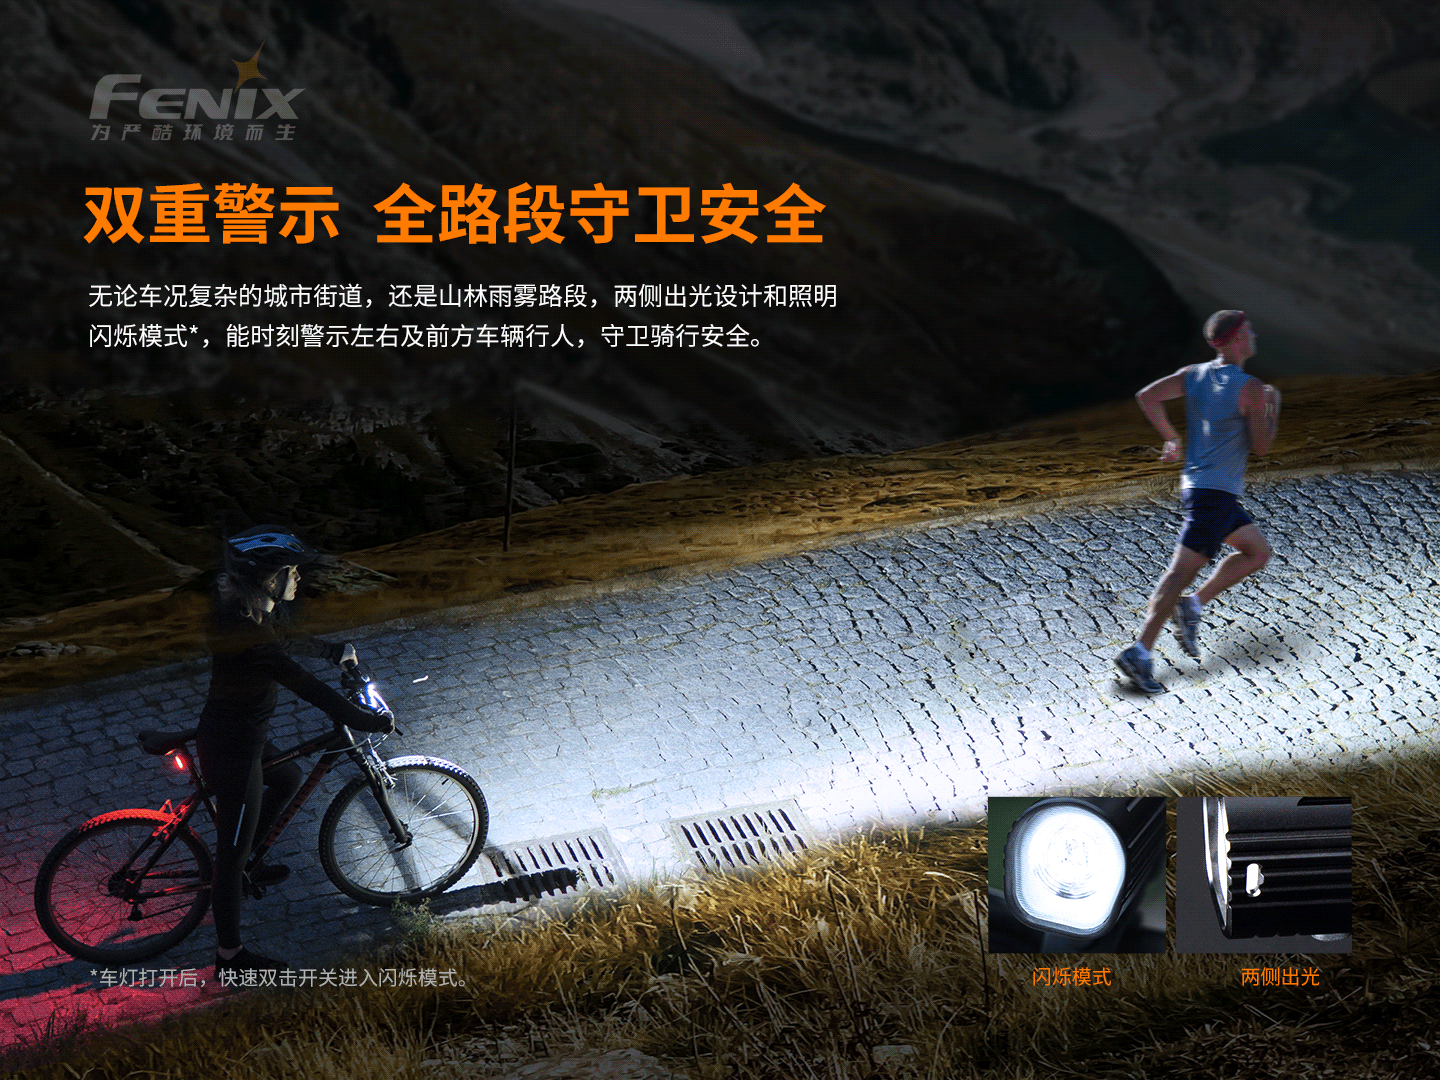 2.【錸特光電】FENIX BC26R 1600流明 超亮可充式 專業 腳踏 169米射程  Type-C充電